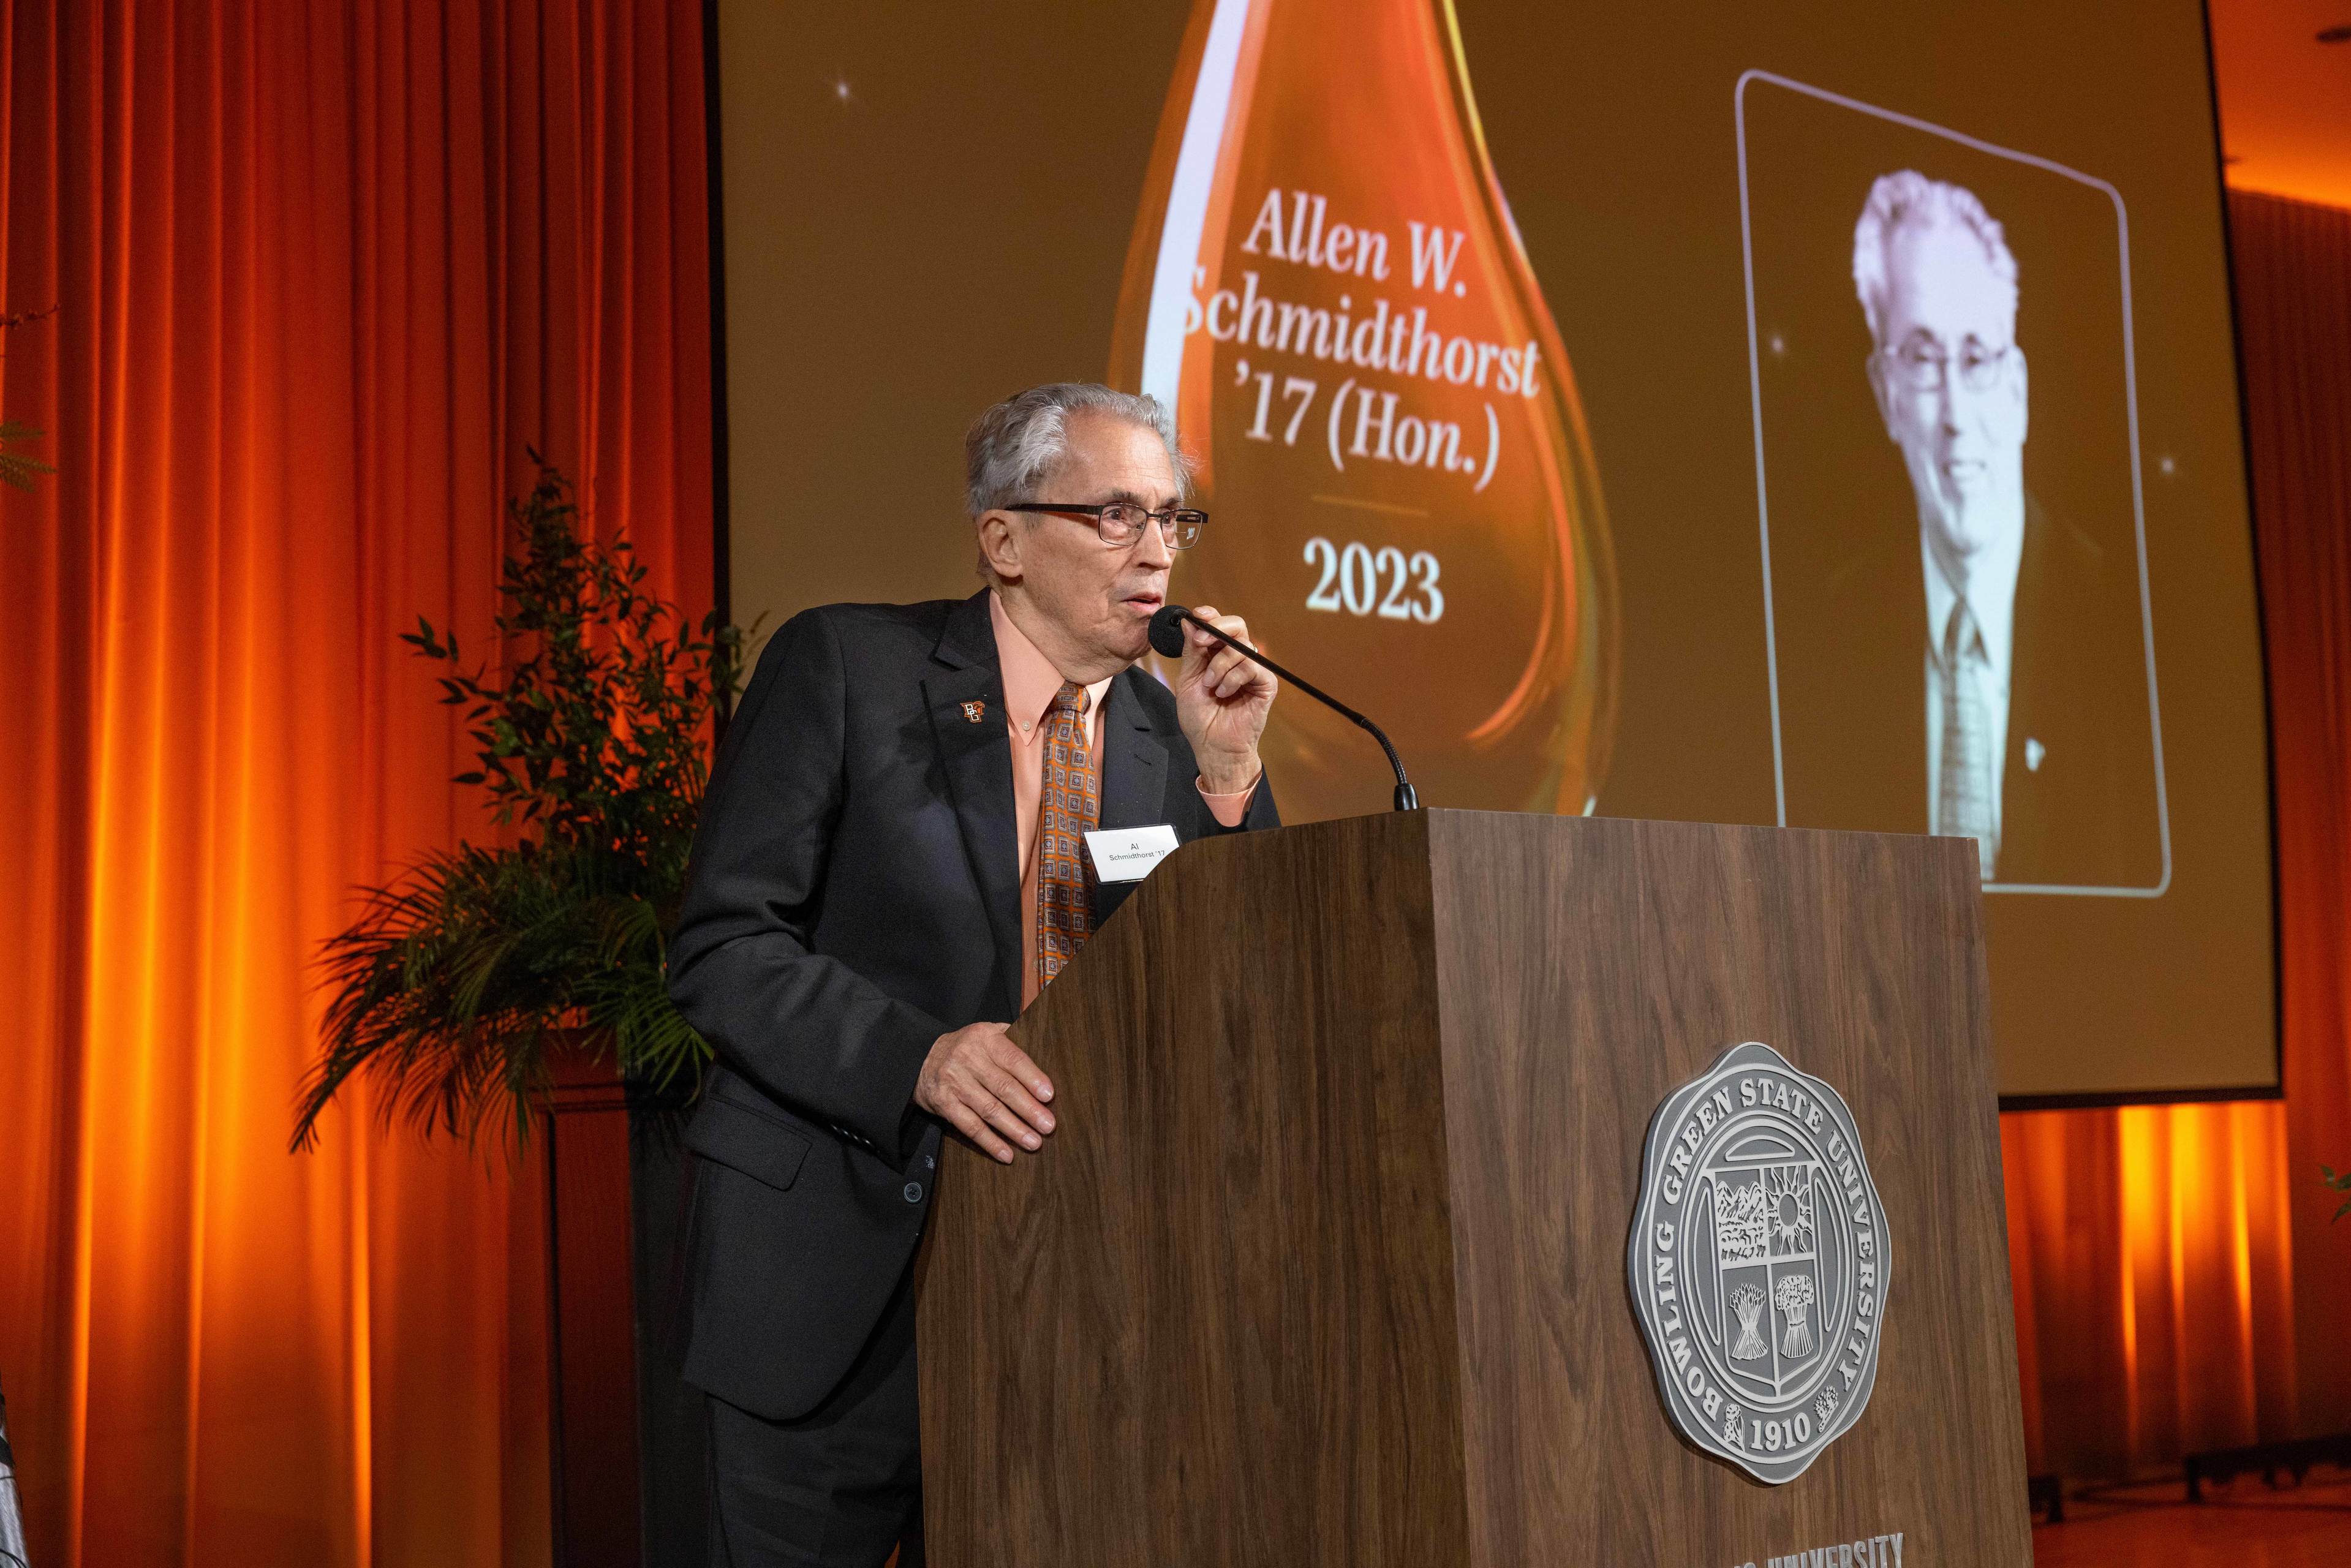 Allen W. Schmidthorst- Academy of Distinguished Alumni 2023 